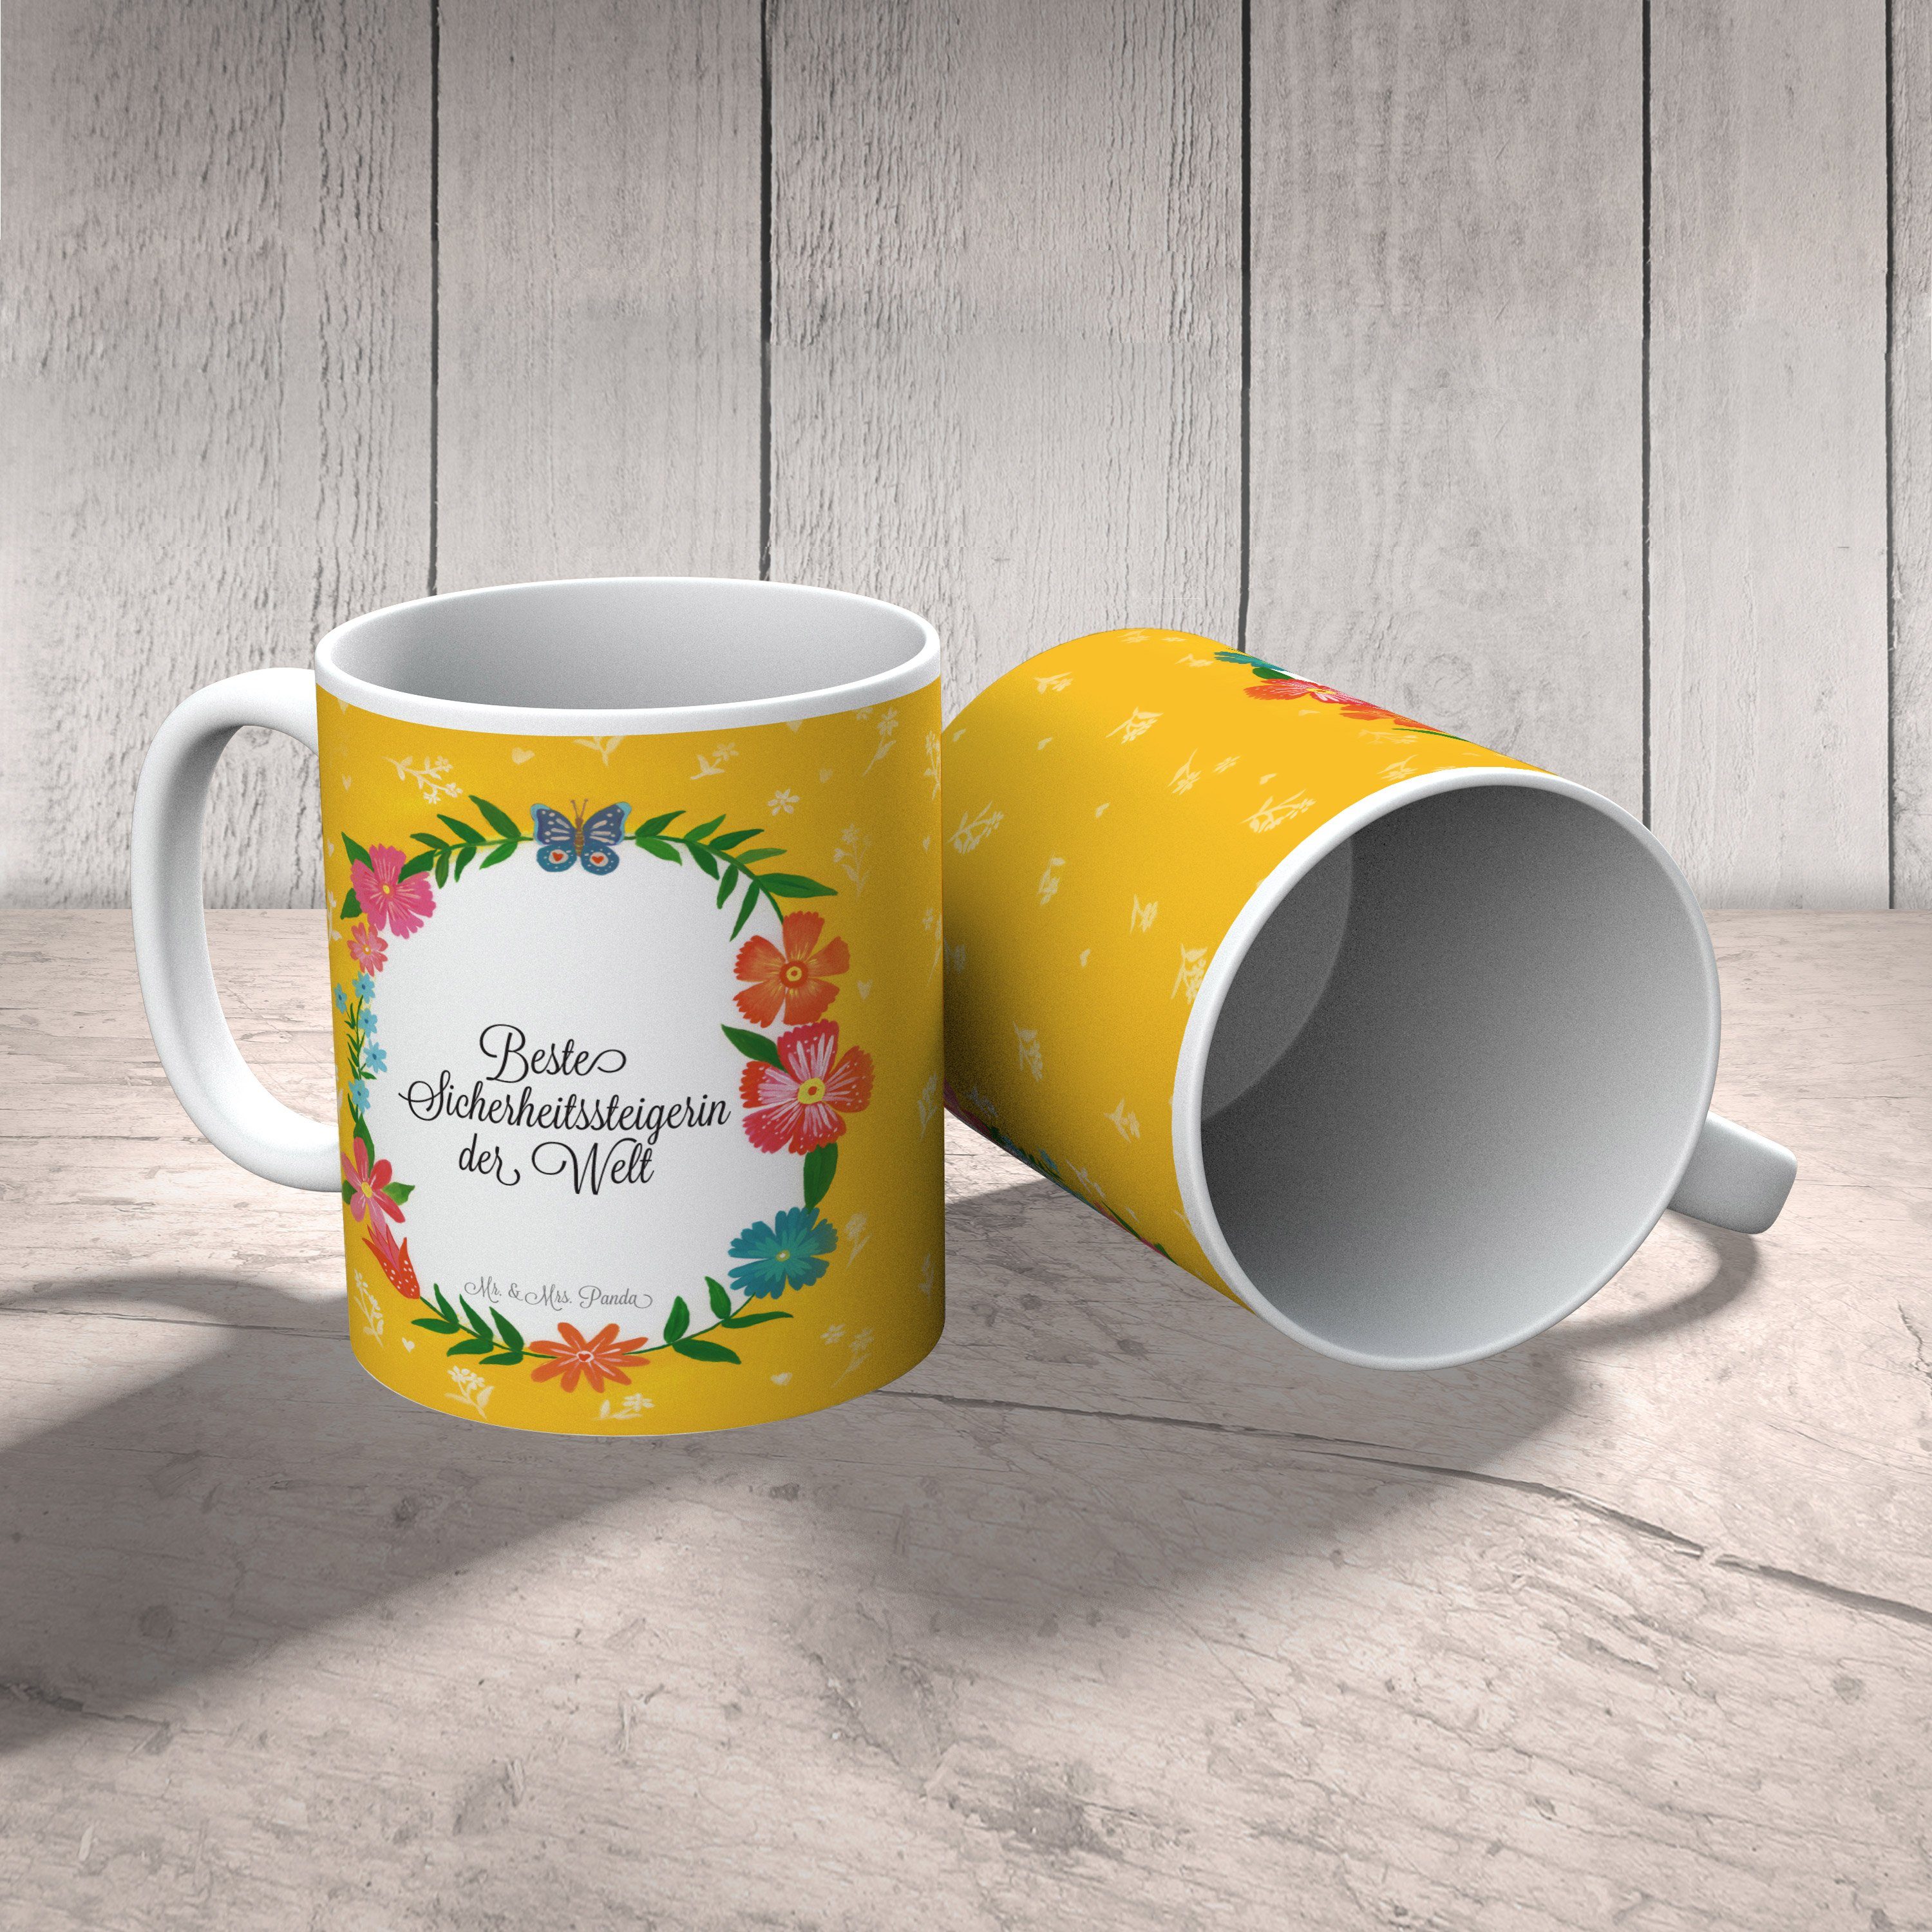 Mr. & Mrs. Panda Geschenk, Schenken, Tass, - Sicherheitssteigerin Kaffeetasse, Geschenk Tasse Keramik